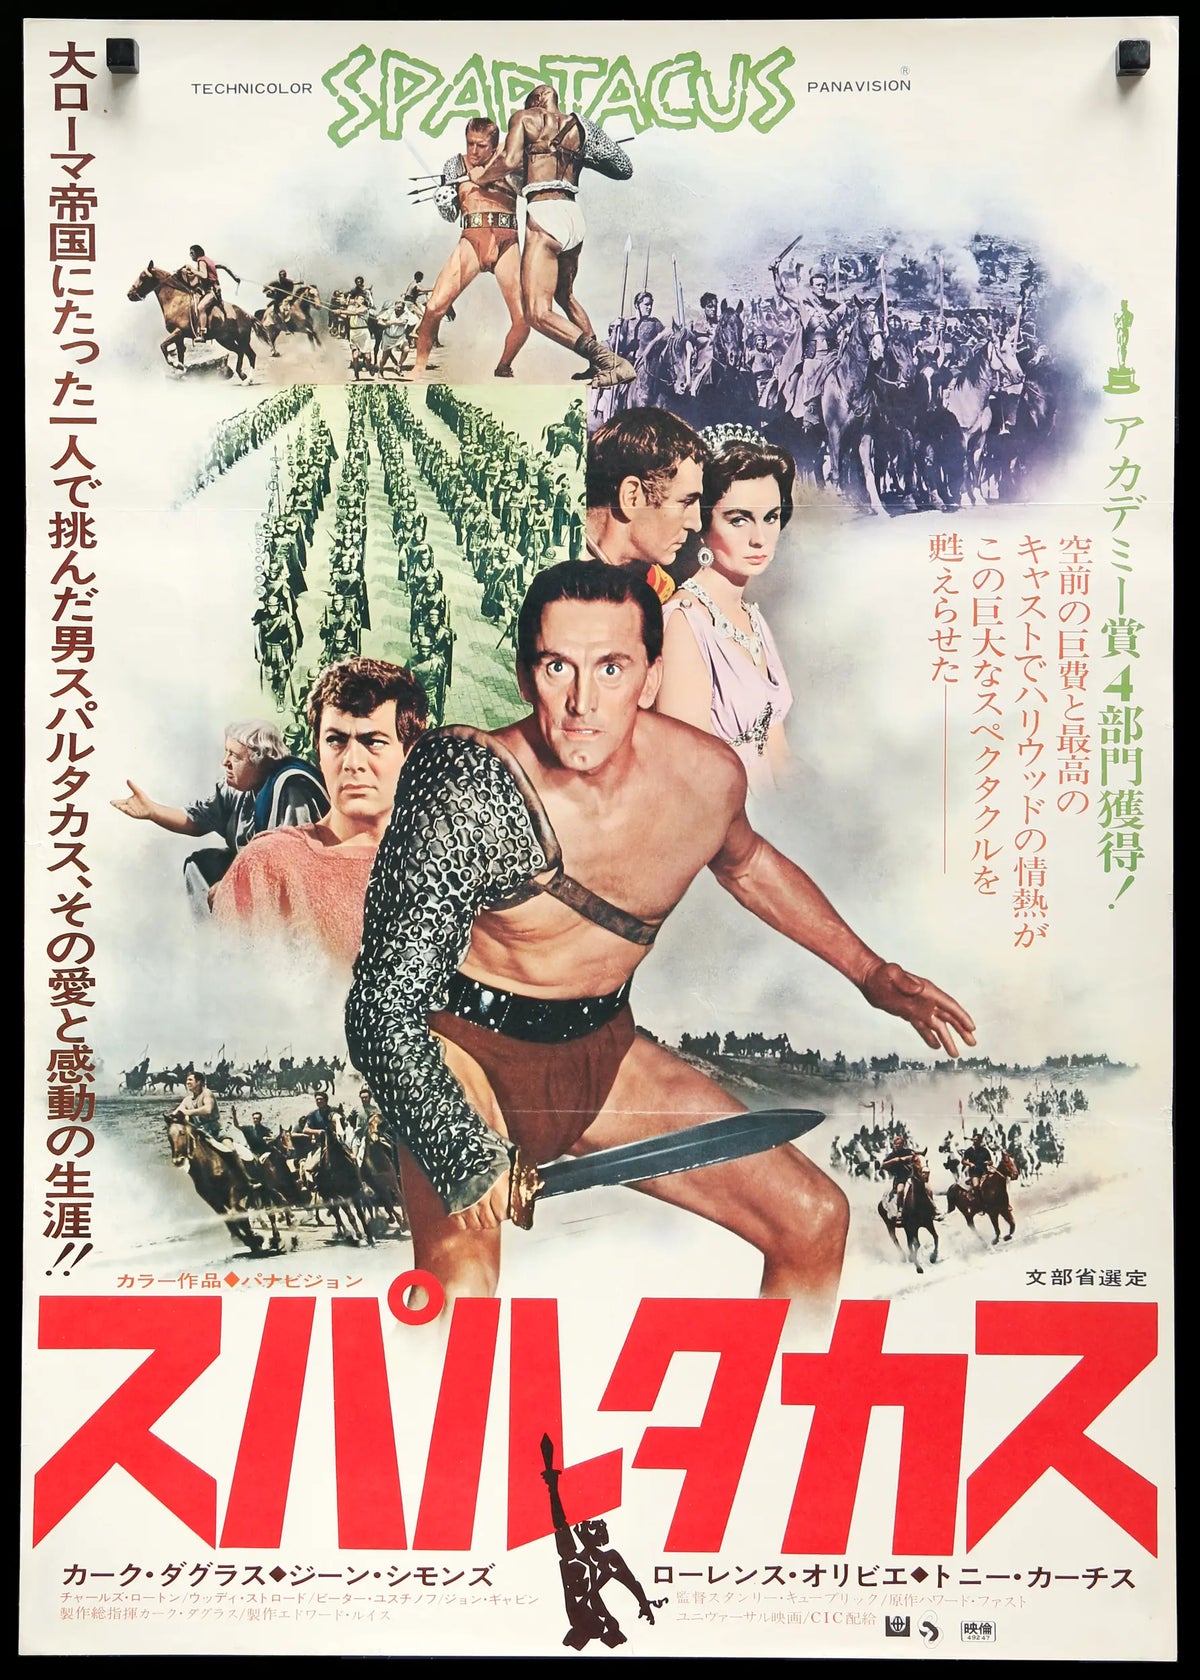 Spartacus (1960) original movie poster for sale at Original Film Art